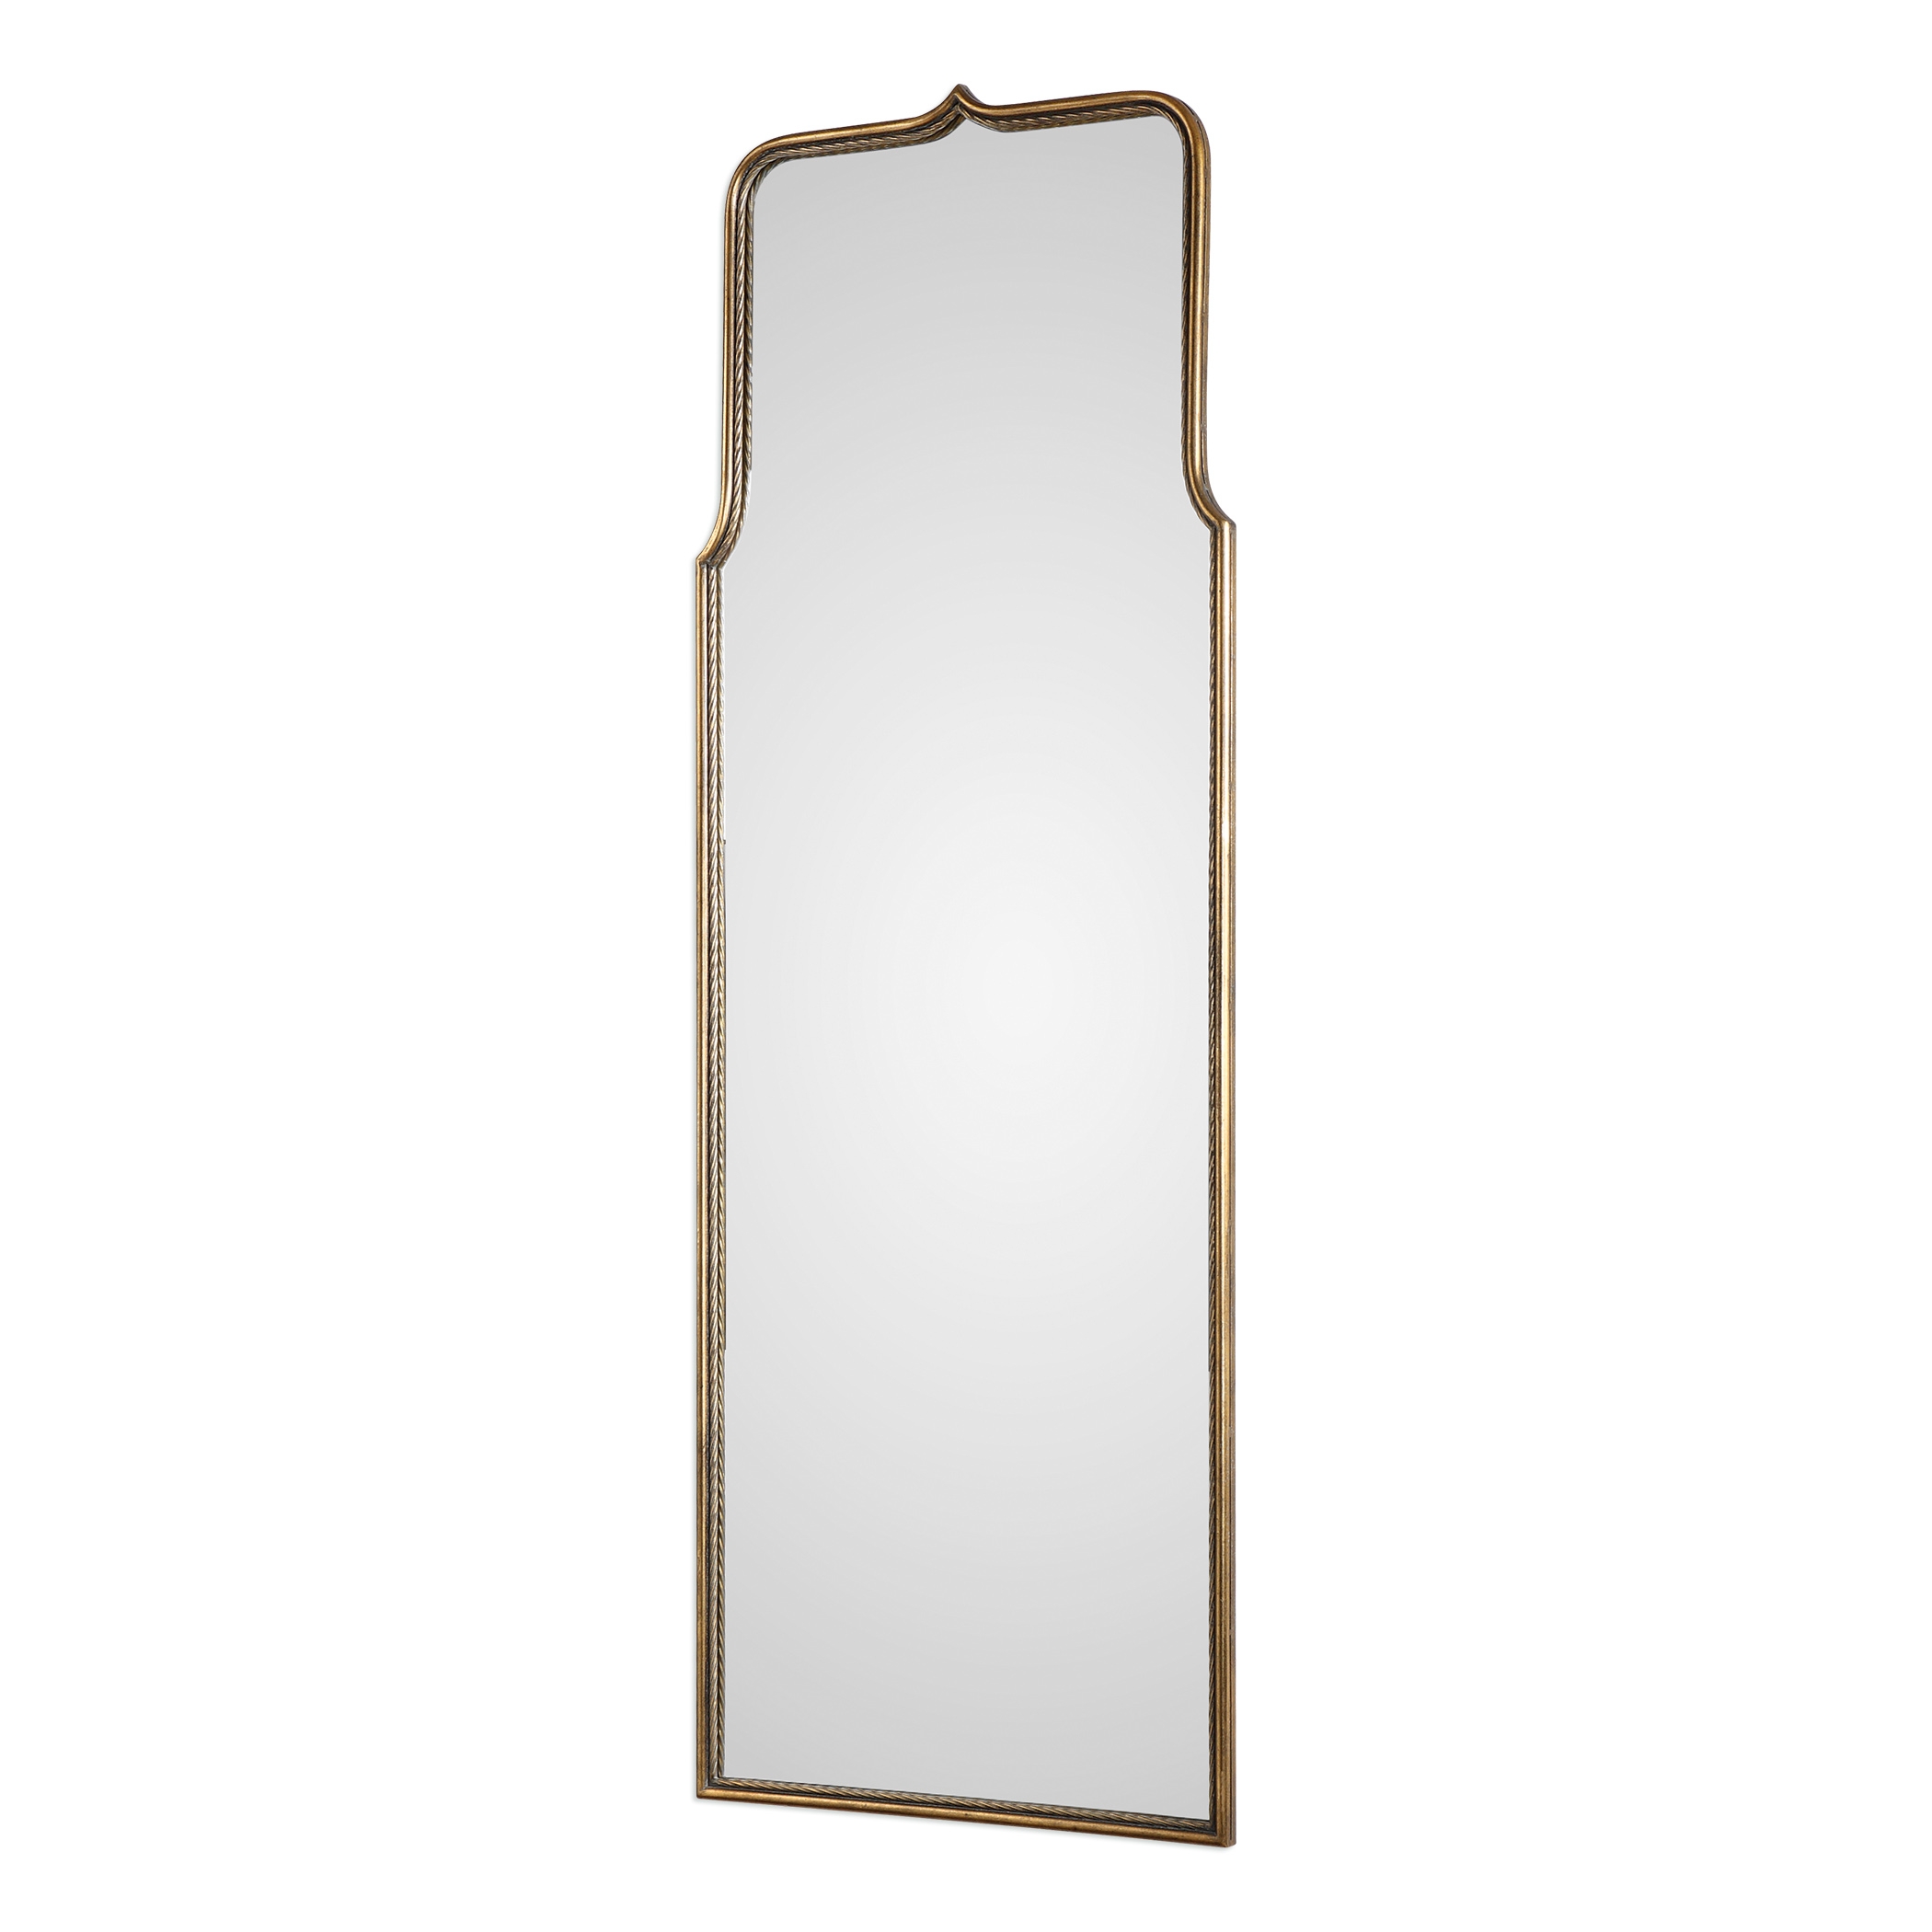 Adelasia Antiqued Gold Mirror - Image 3